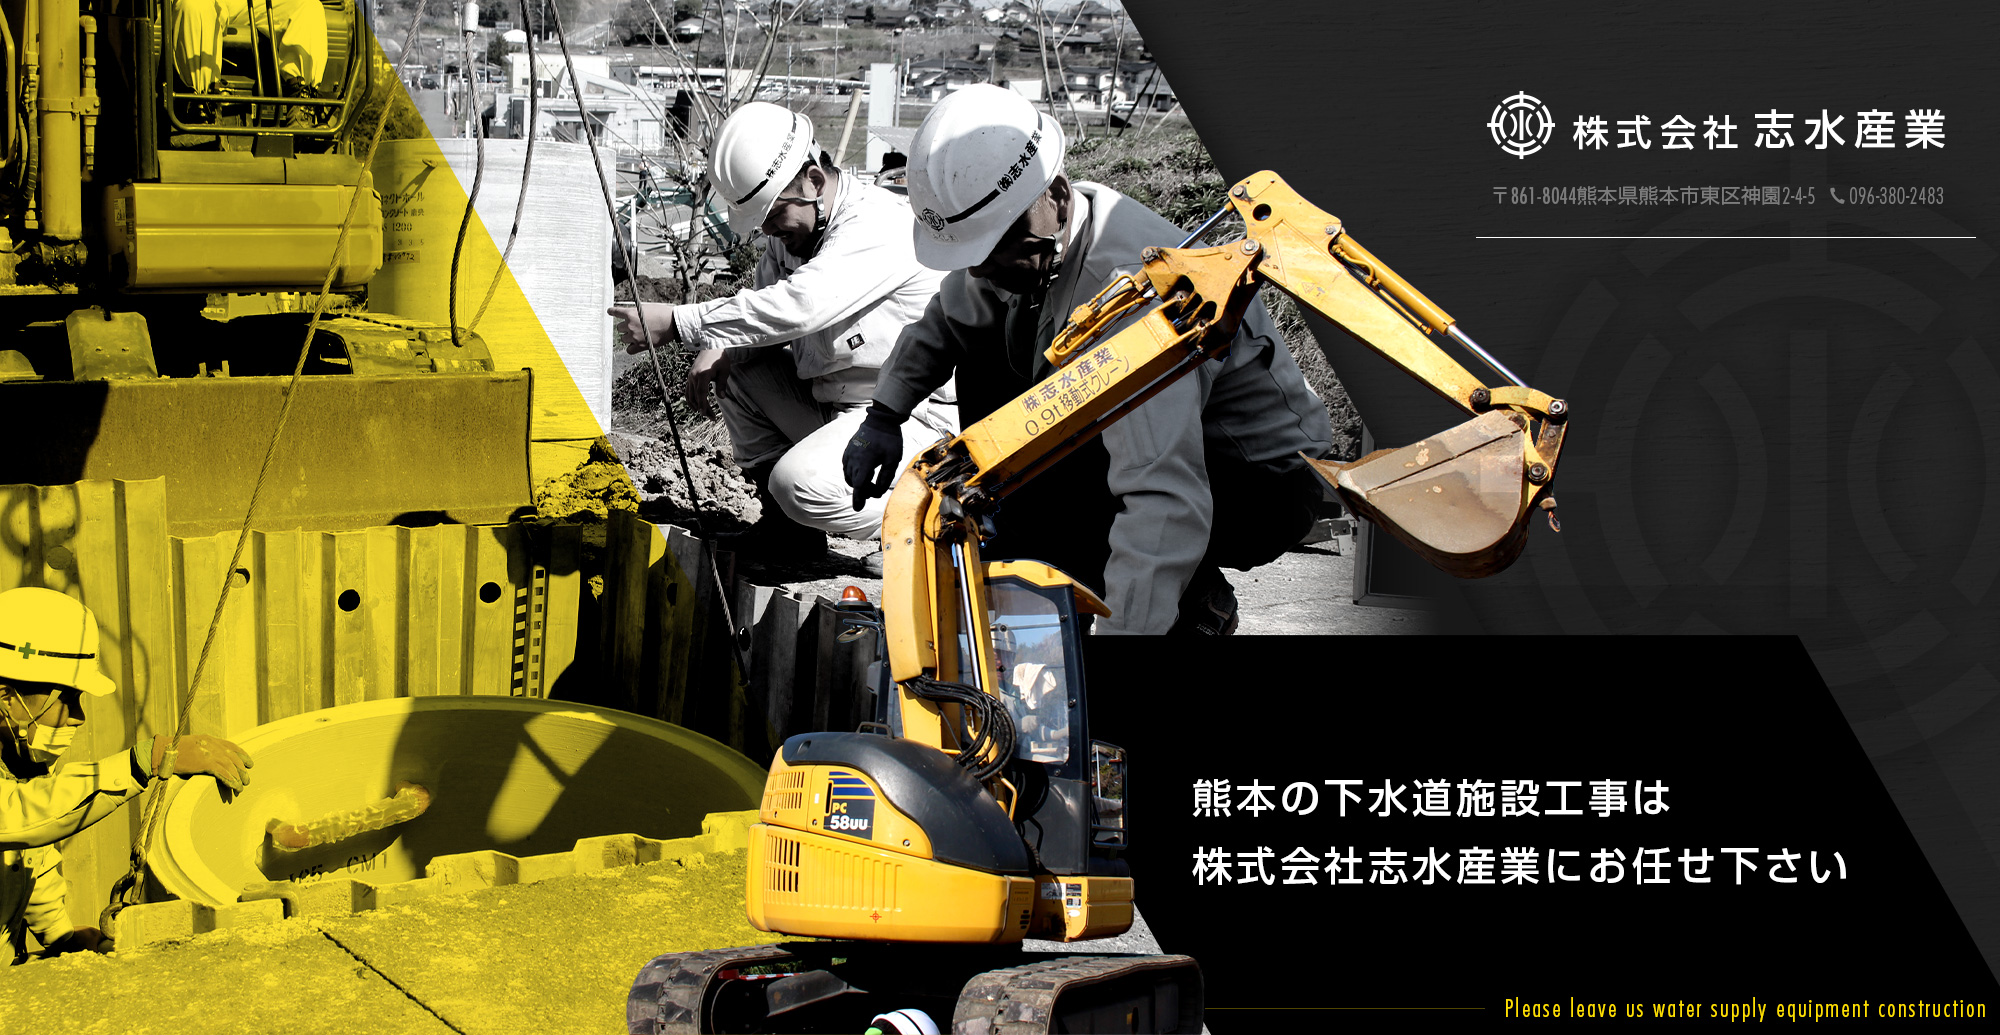 熊本の水道施設工事は“株式会社 志水産業“にお任せ下さい